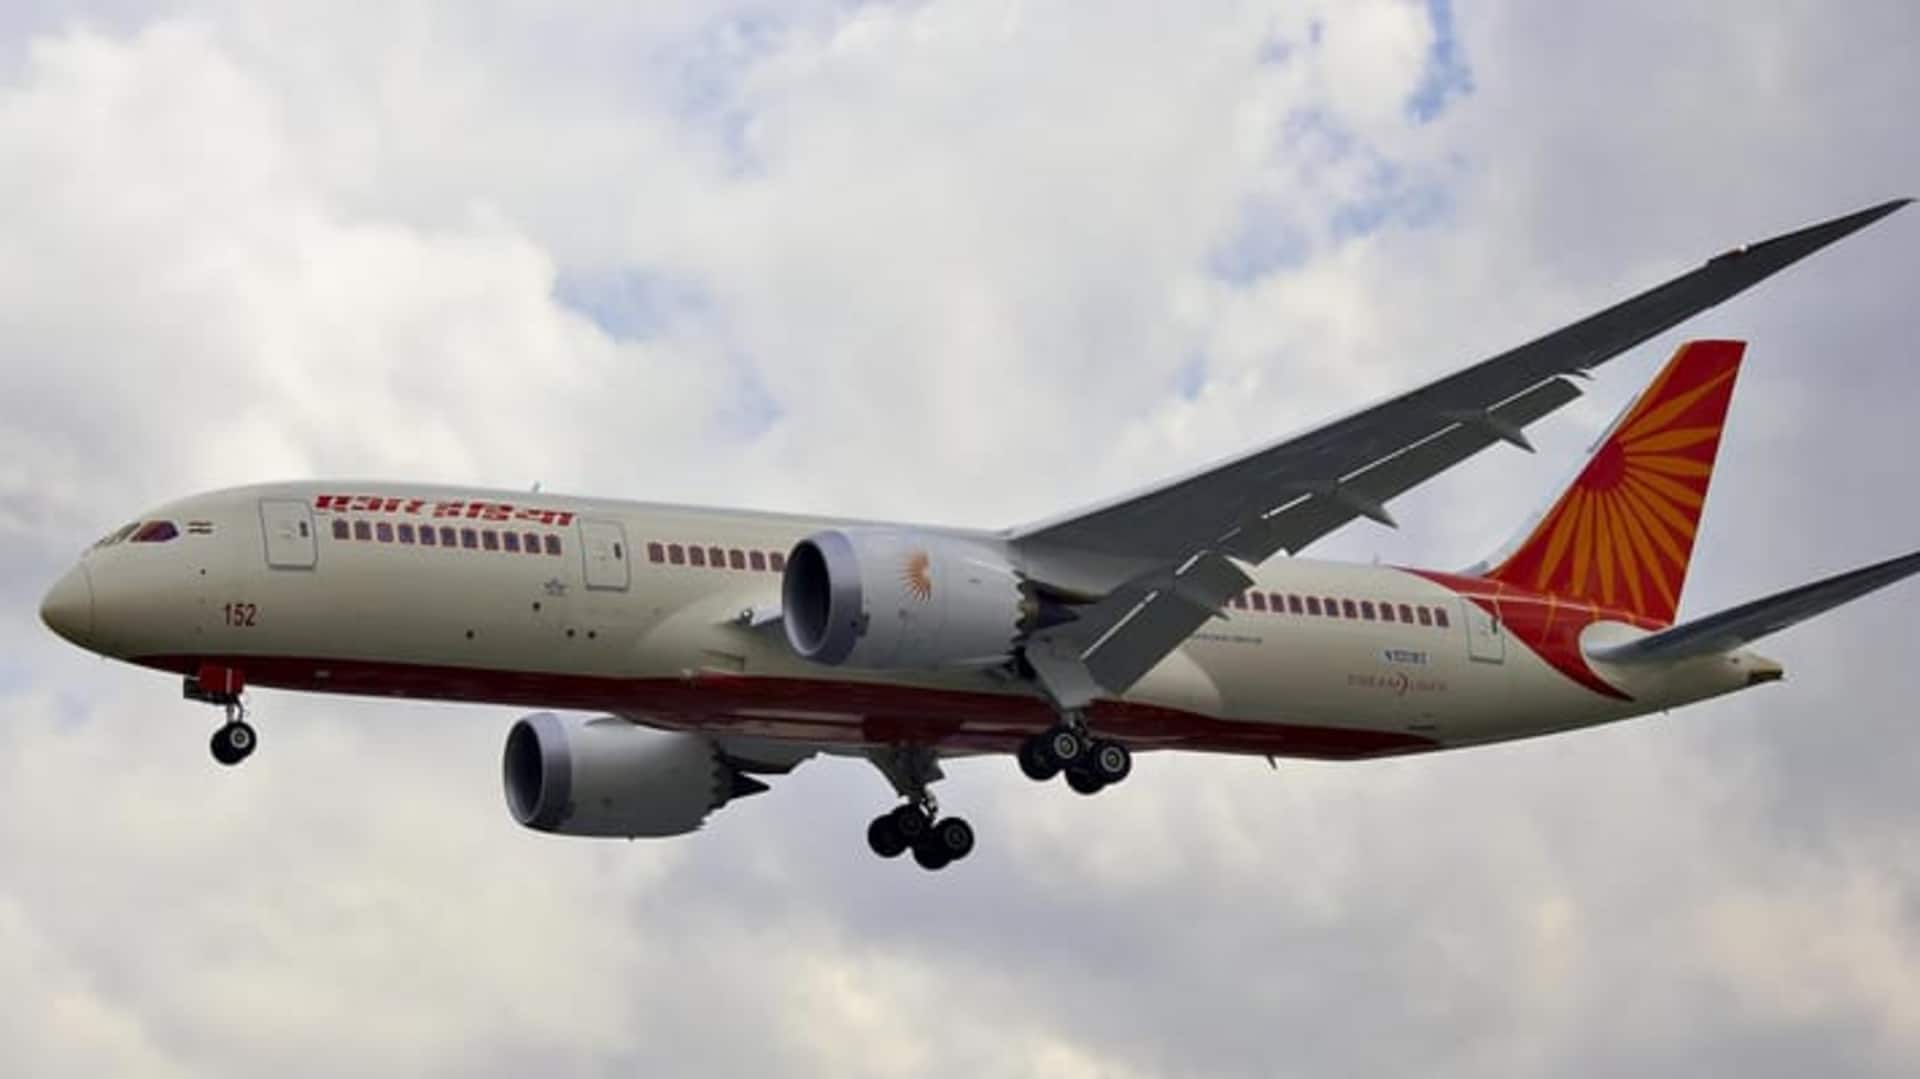 कॉकपिट में महिला का प्रवेश मामला: एयर इंडिया पर 30 लाख का जुर्माना, पायलट निलंबित